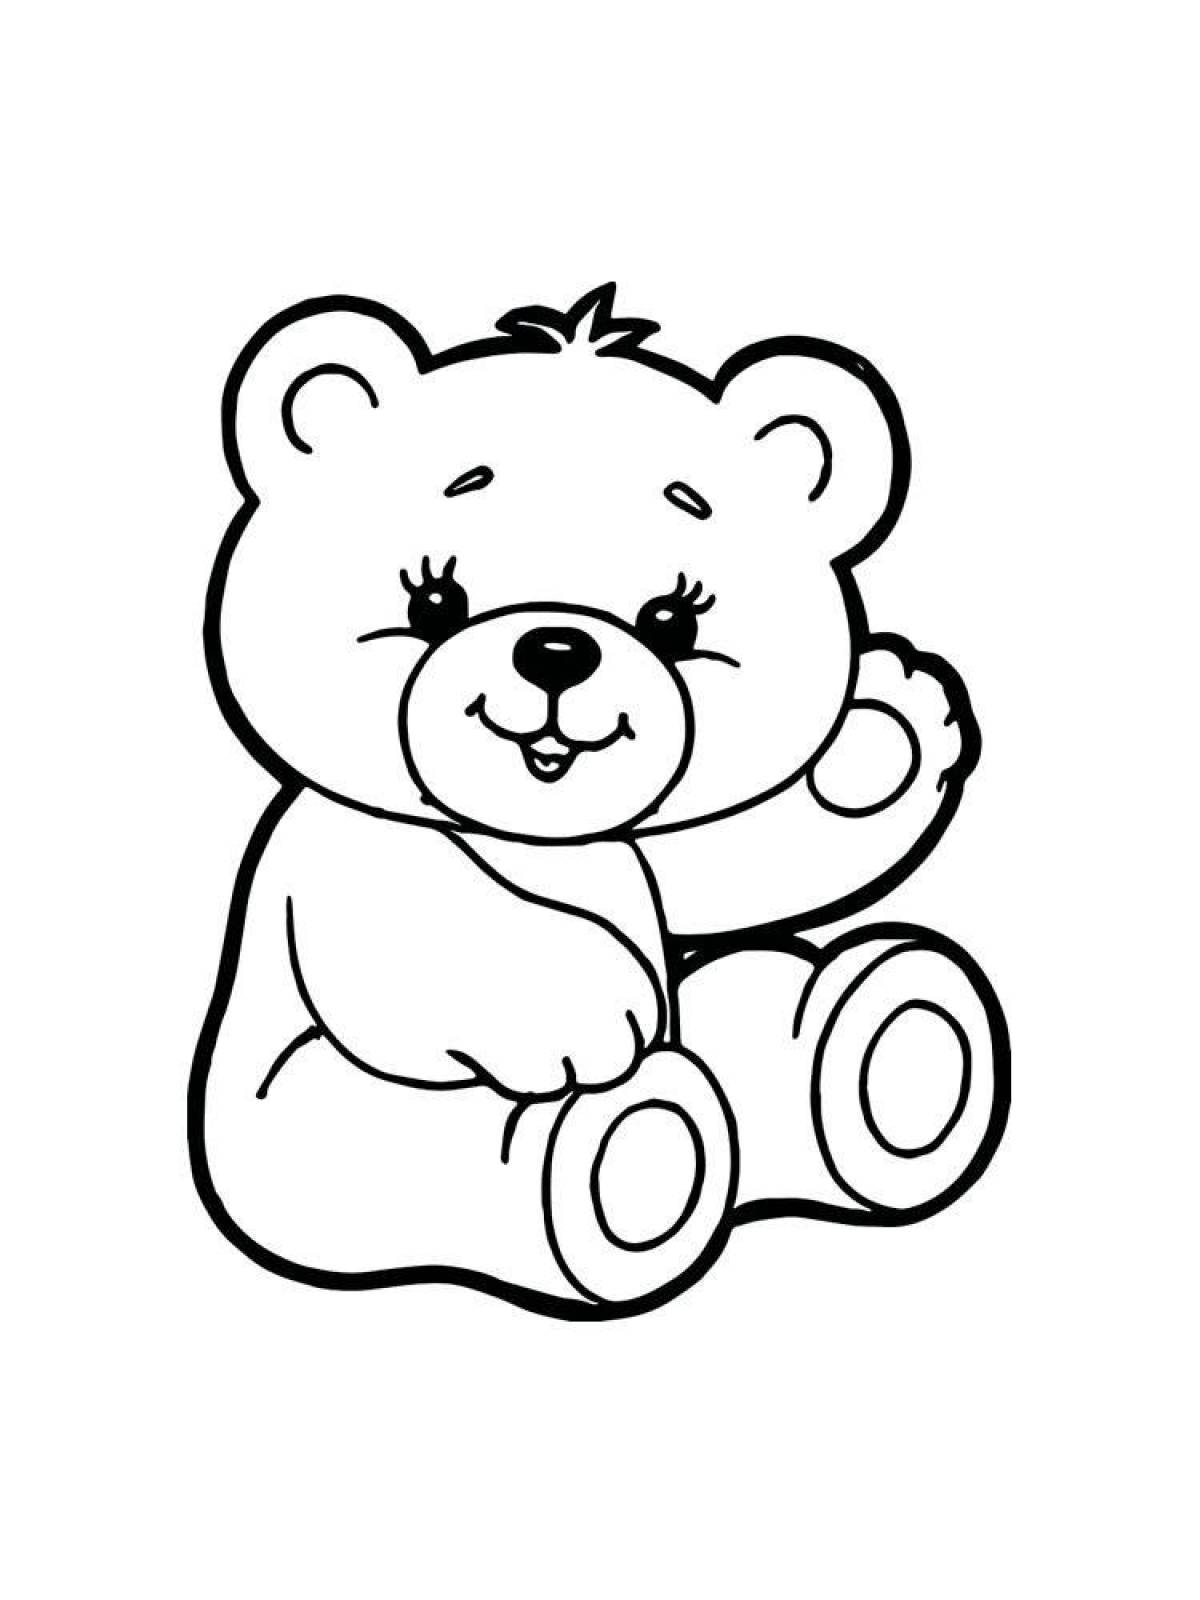 Анимированная страница раскраски медведя для детей